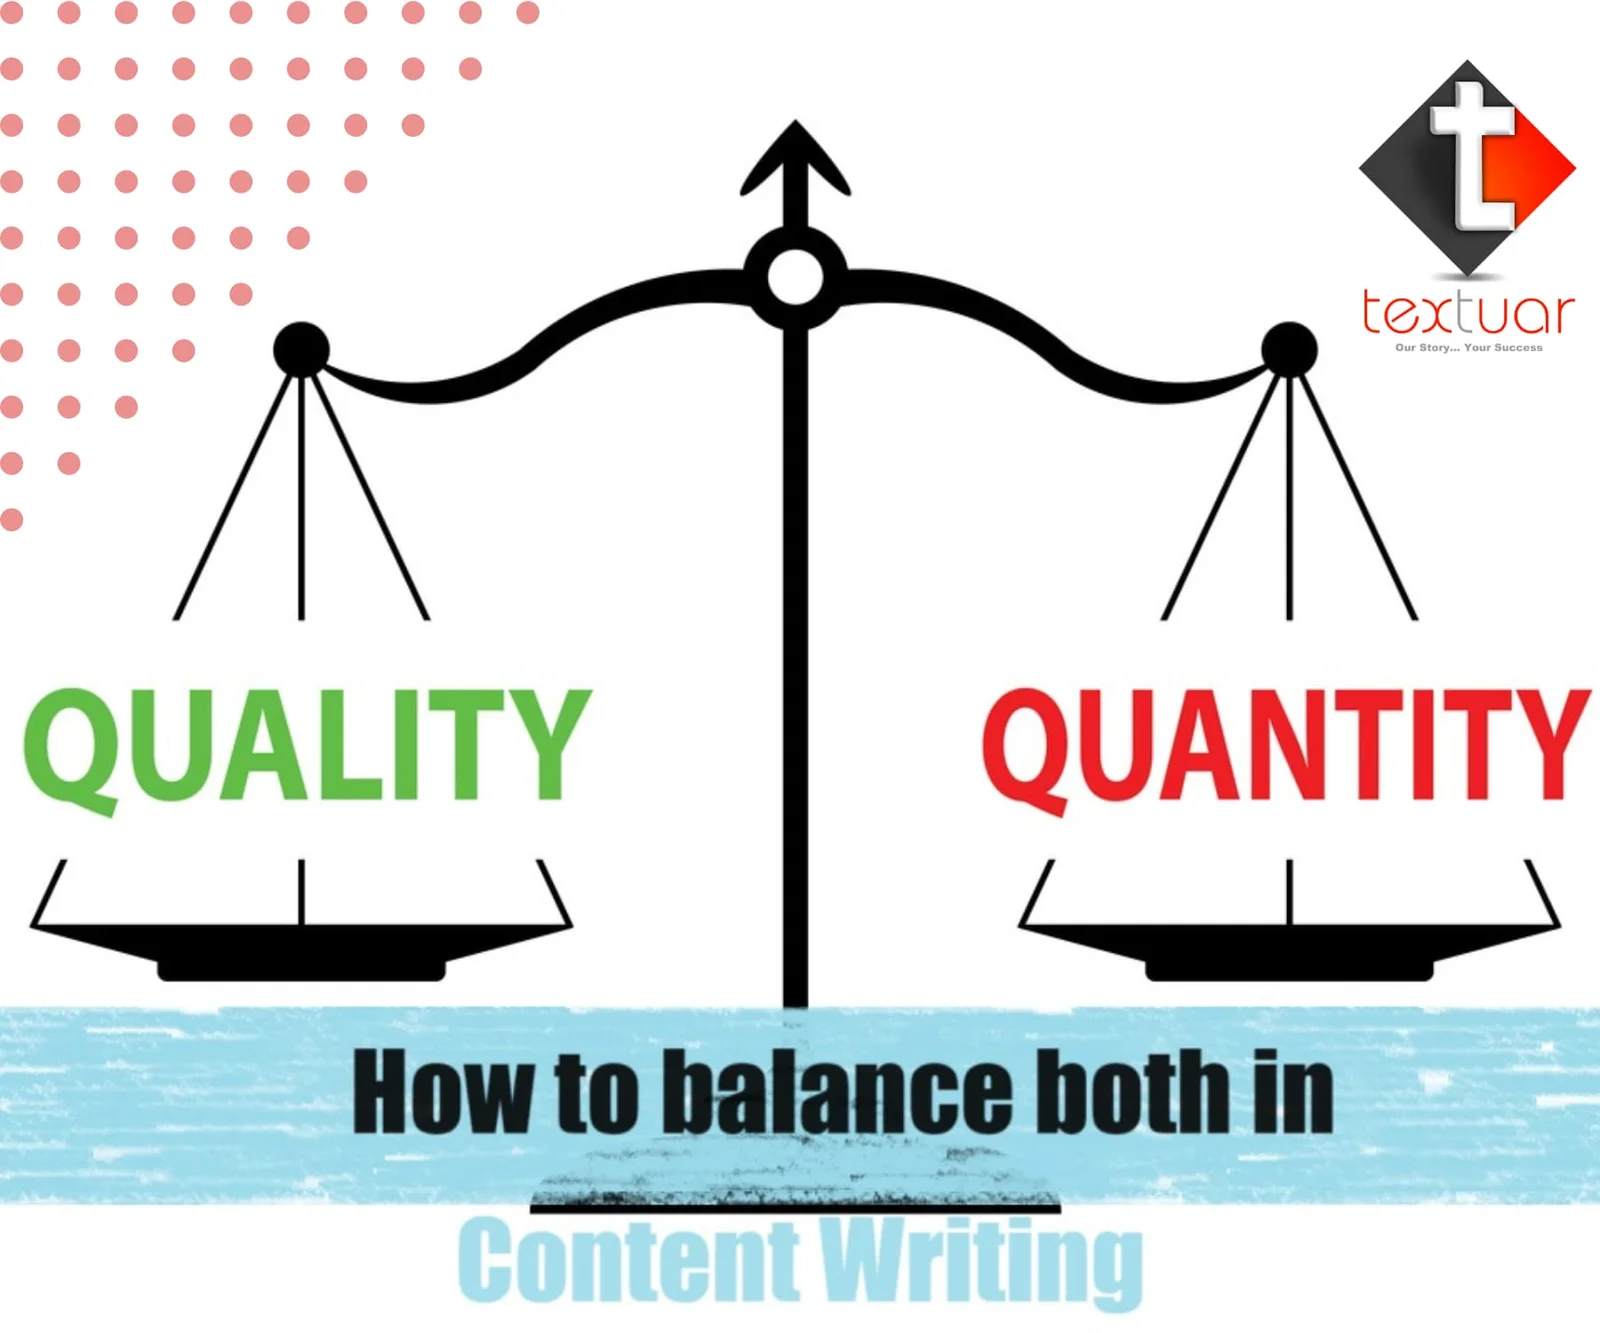 quantity versus quality content writing